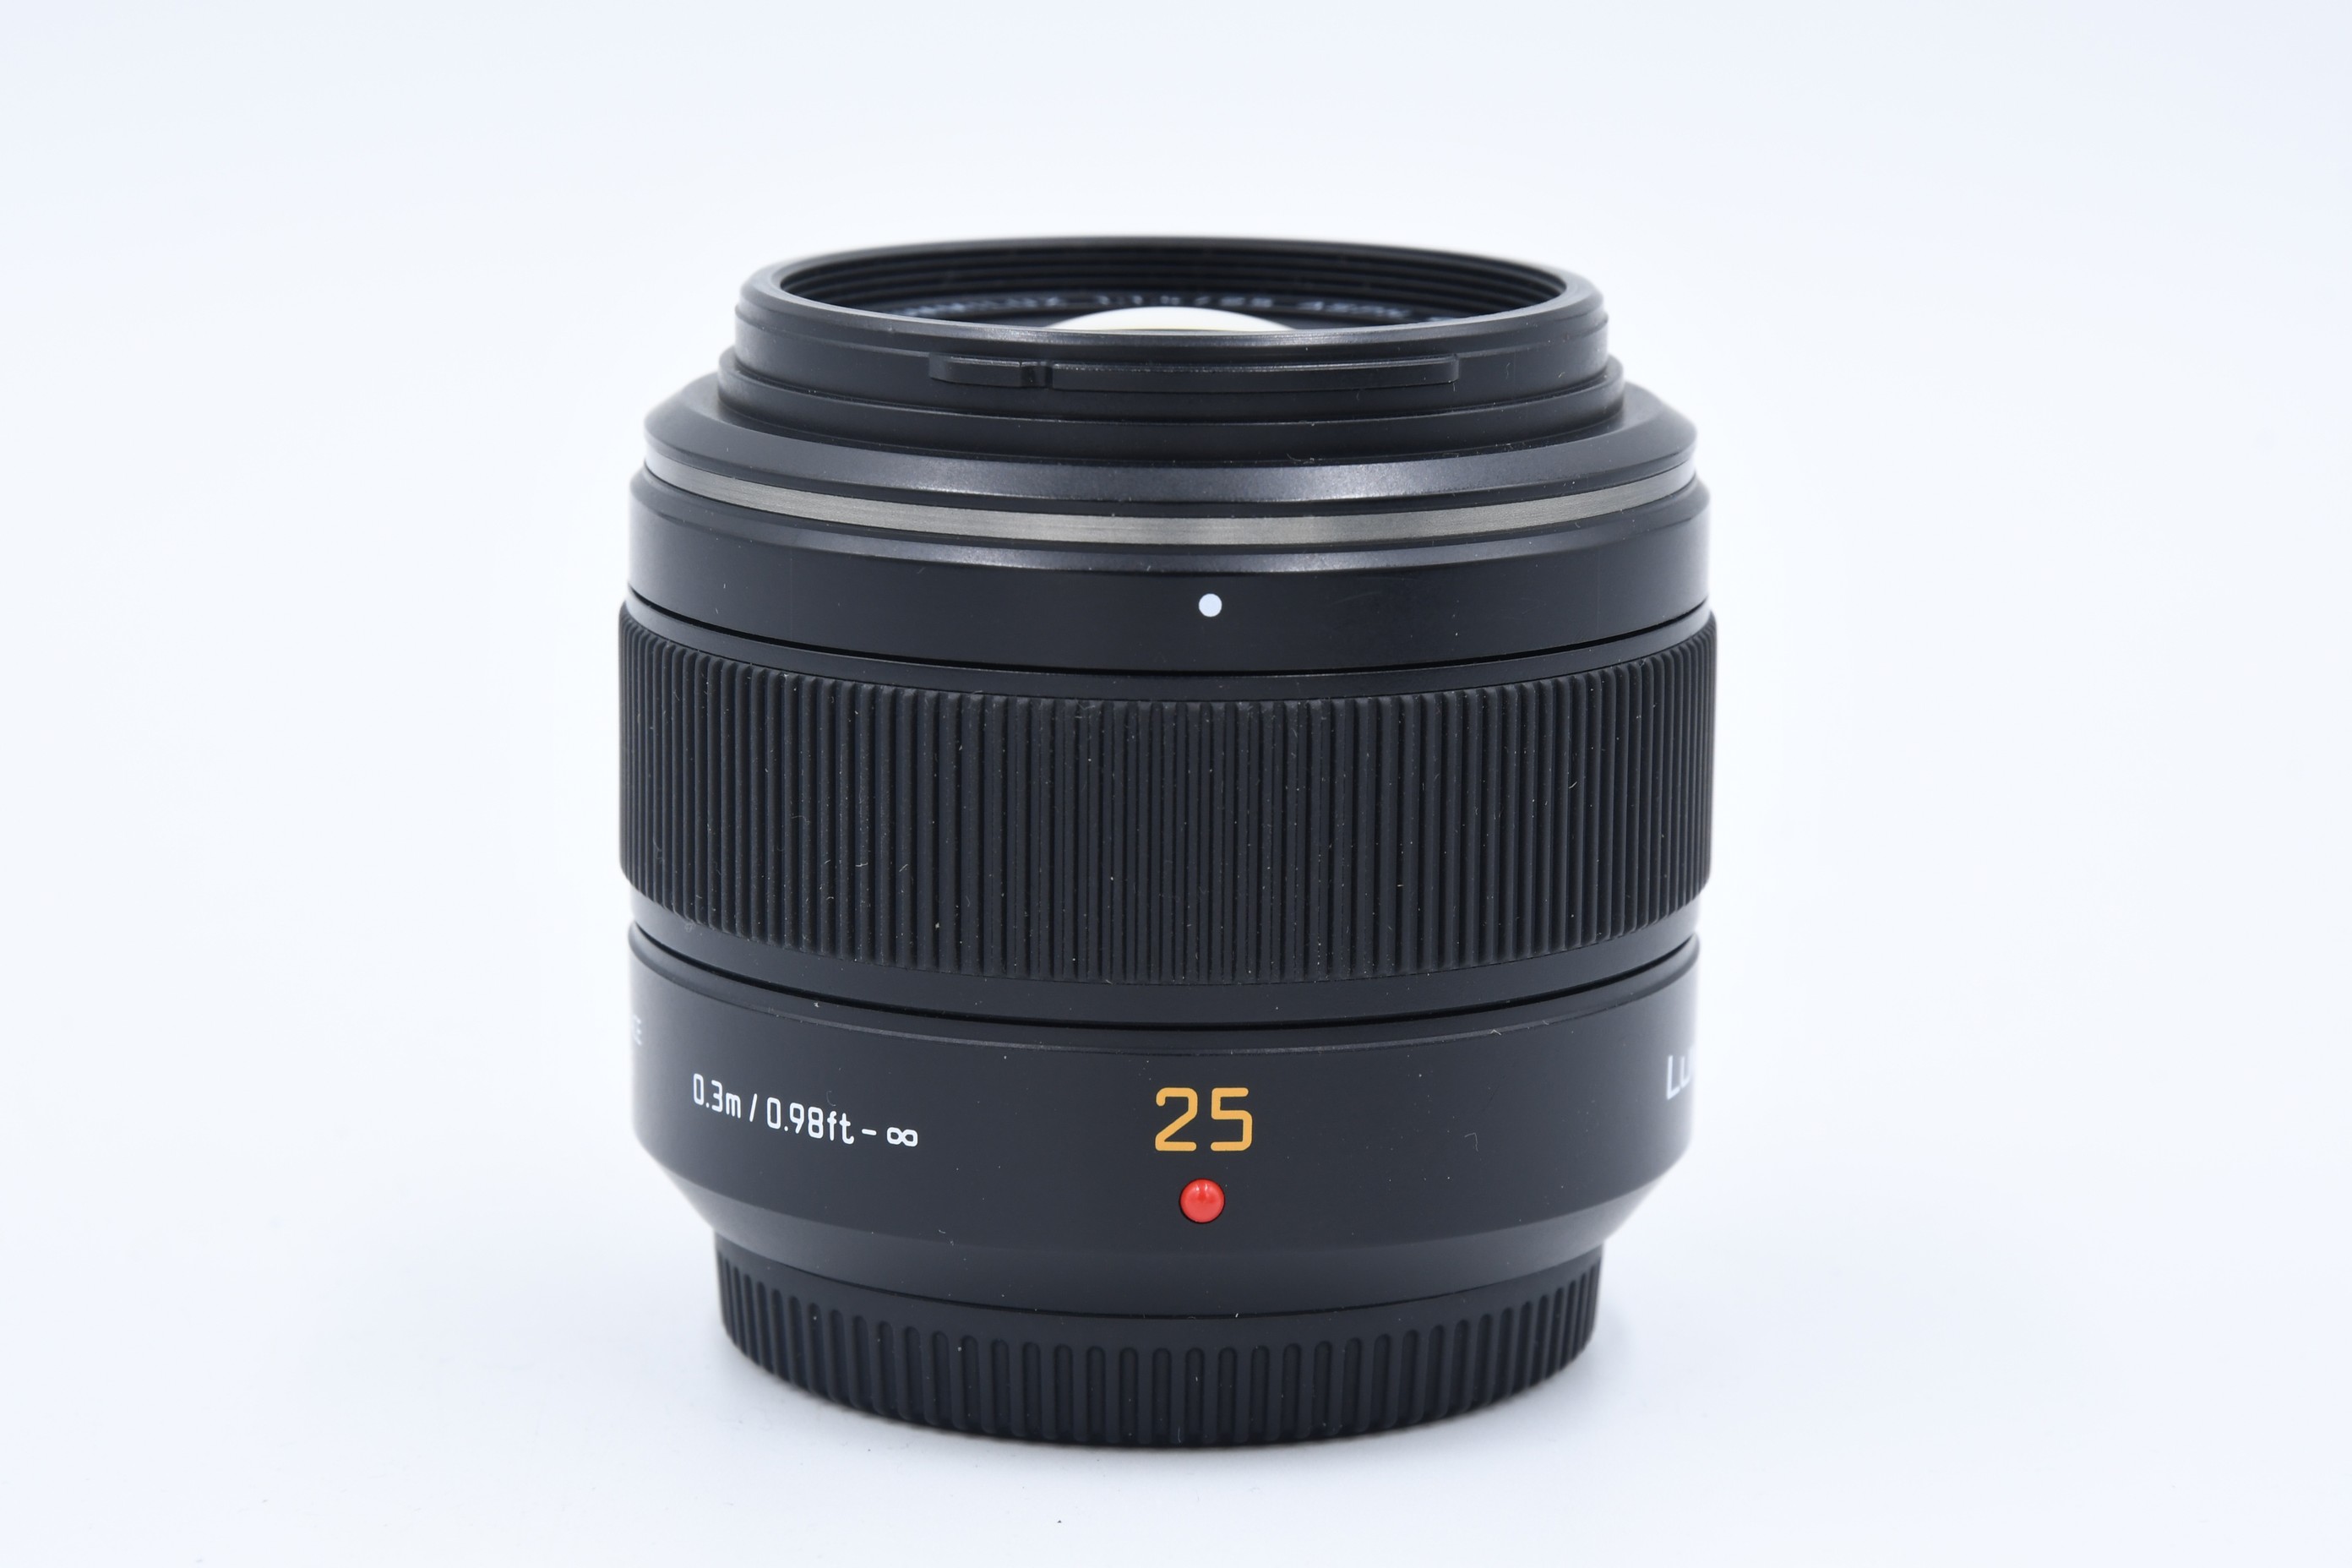  Panasonic Leica DG Summilux 25/1.4 (..  5)